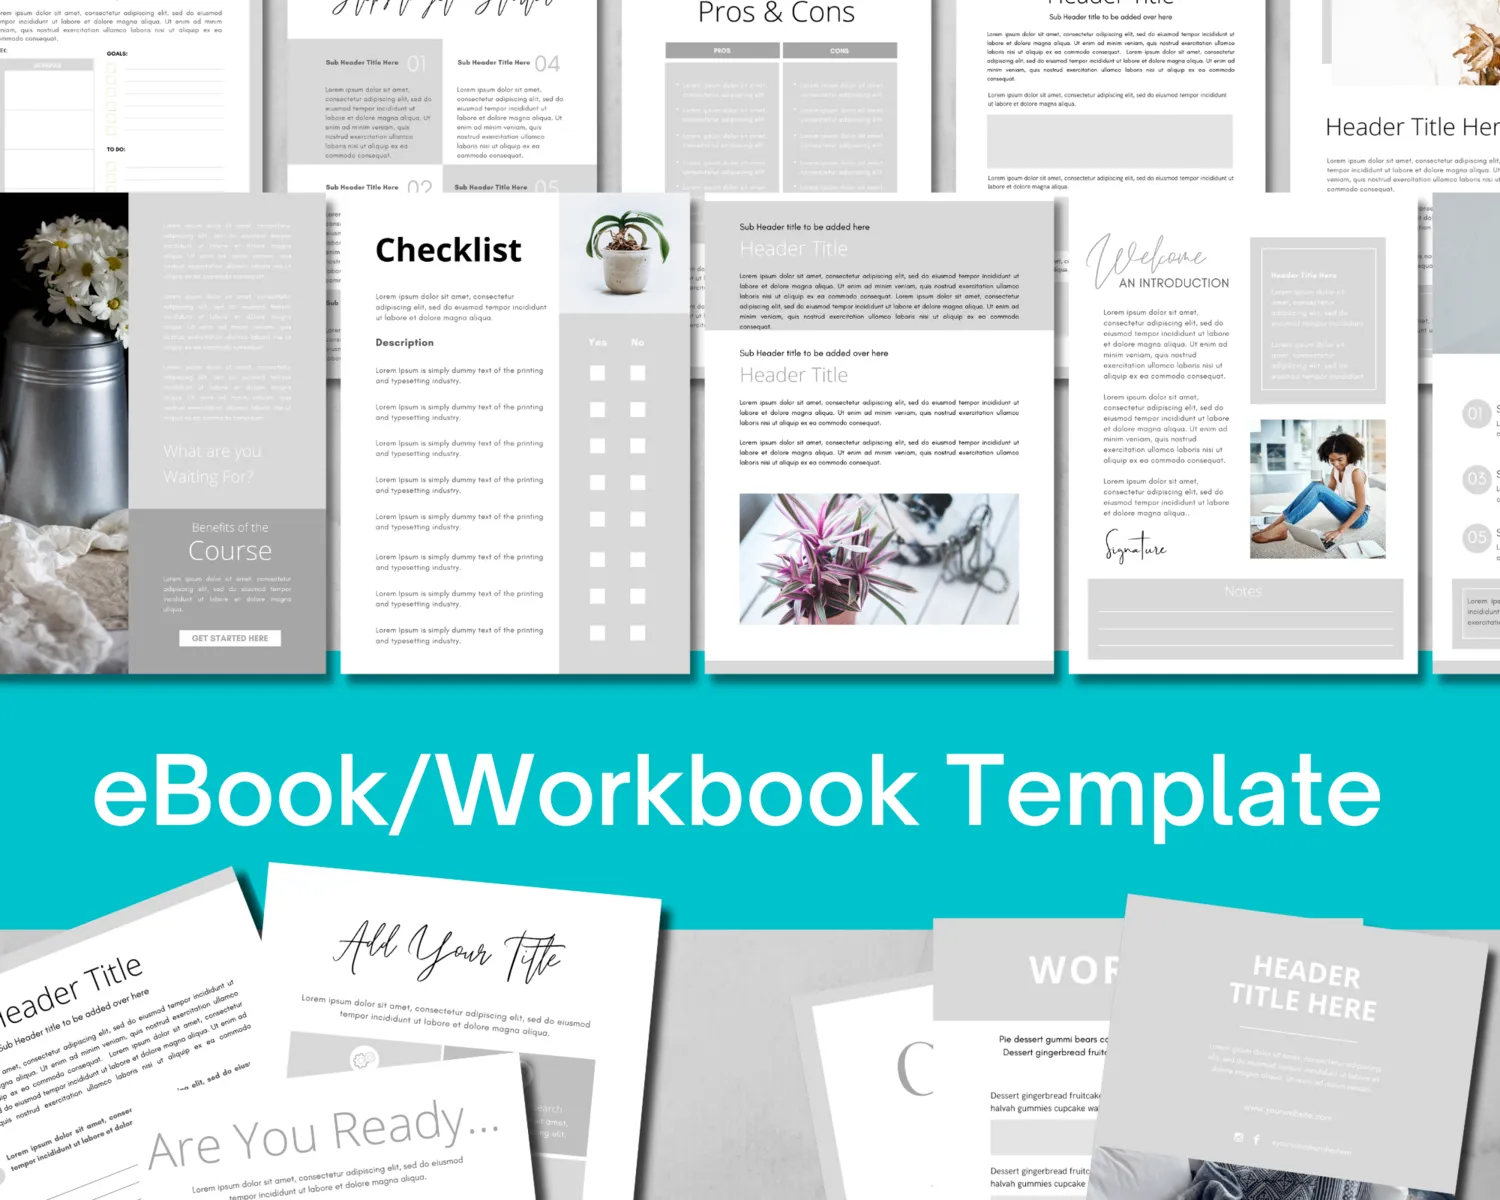 Workbook/eBook Template 